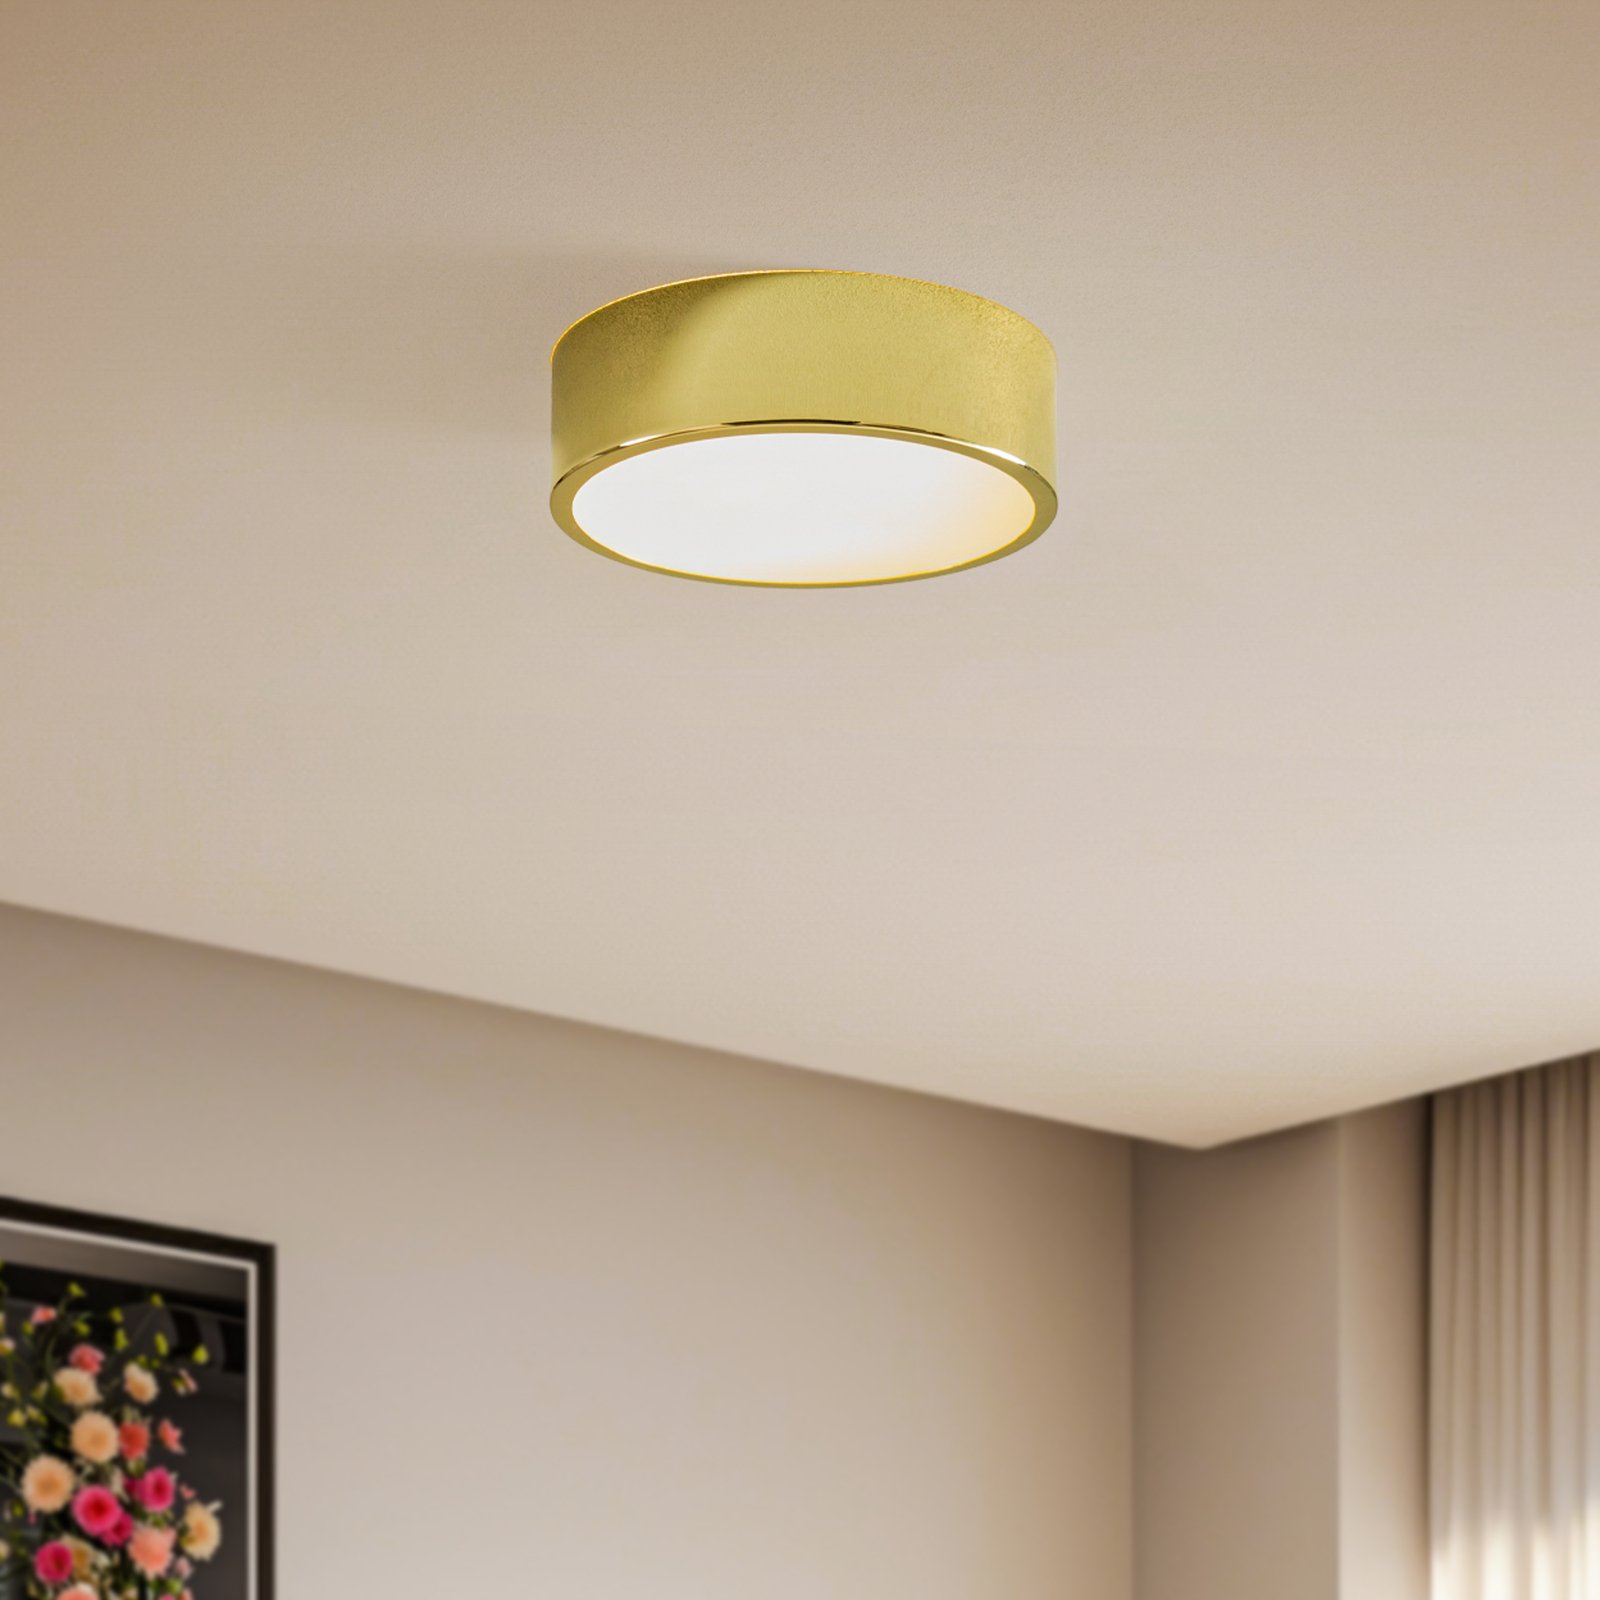 Kimban ceiling light made of metal, Ø 26 cm, gold